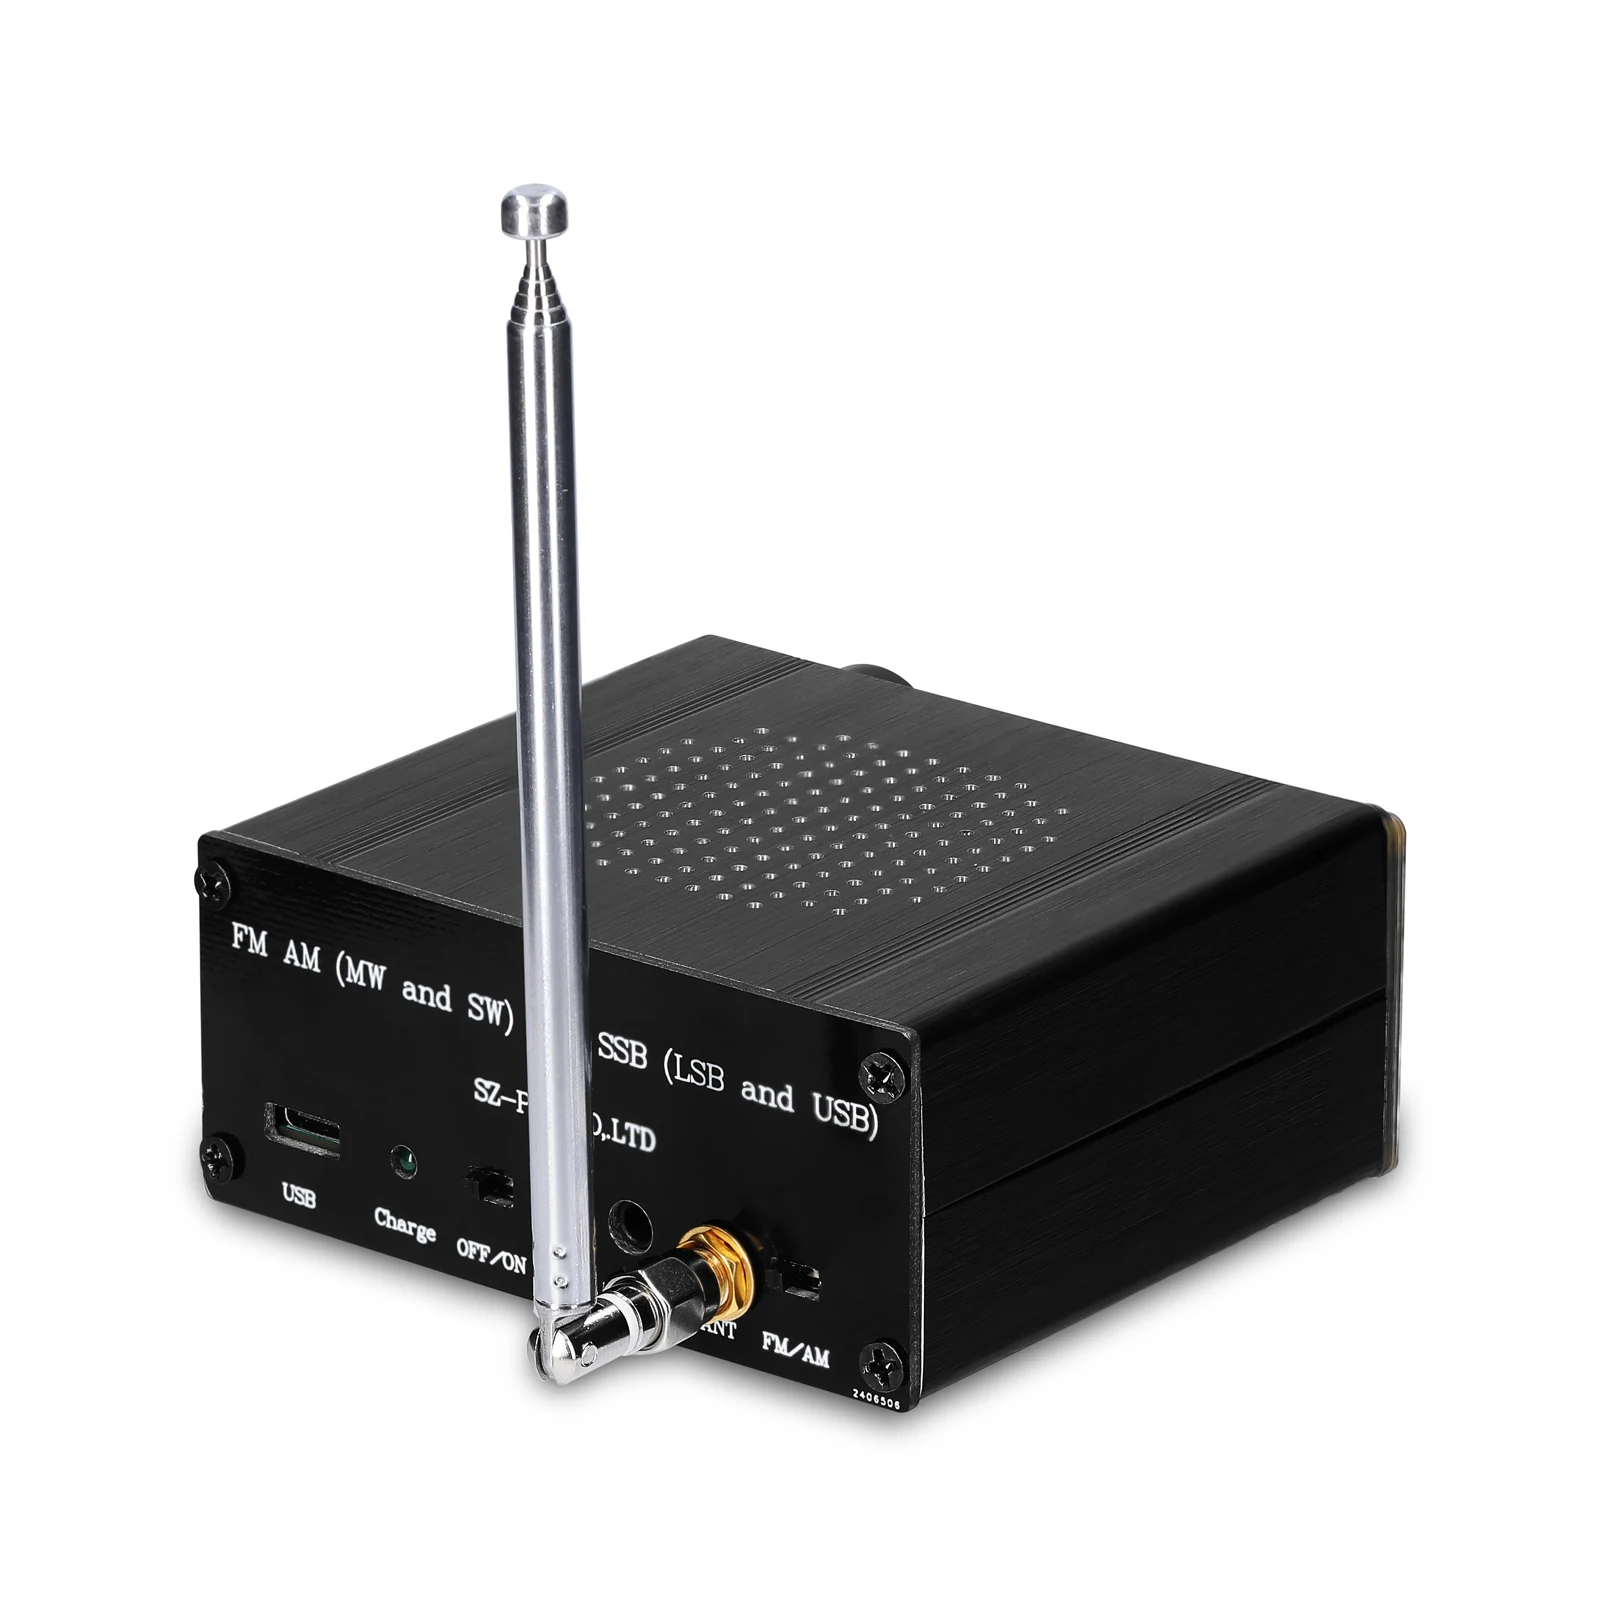 

10,1-дюймовый OLED-дисплей ATS-20 SI4735, Полнодиапазонный радиоприемник FM AM (MW & SW) SSB (LSB и USB), покрывающий коммерческие любительские радиочастоты